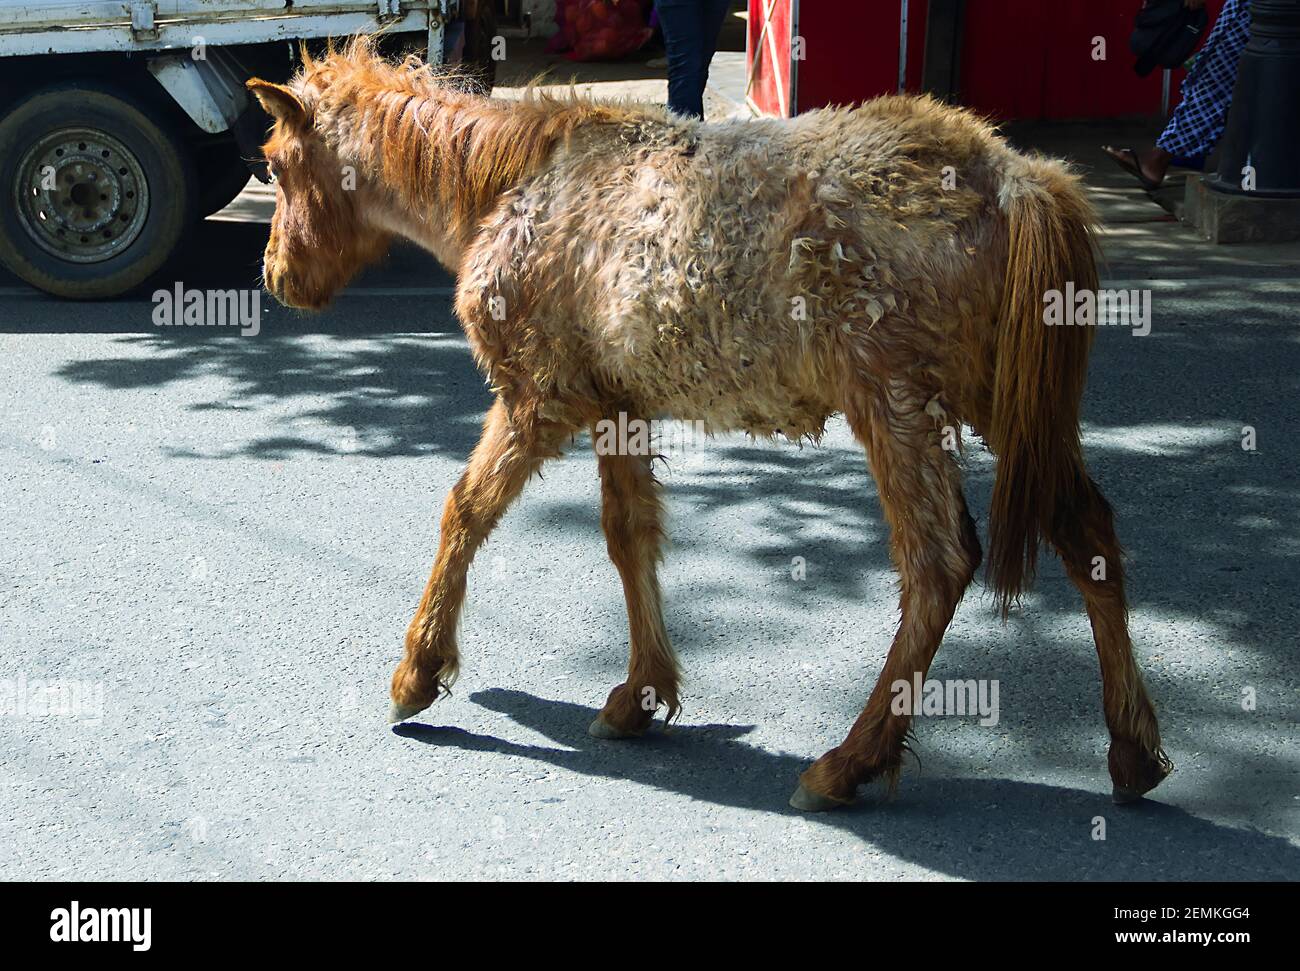 Eine unschöne Horsey. Ein dünnes hengstfohlen oder Maultier mit verfilzten Haaren auf den Straßen einer asiatischen Stadt Stockfoto